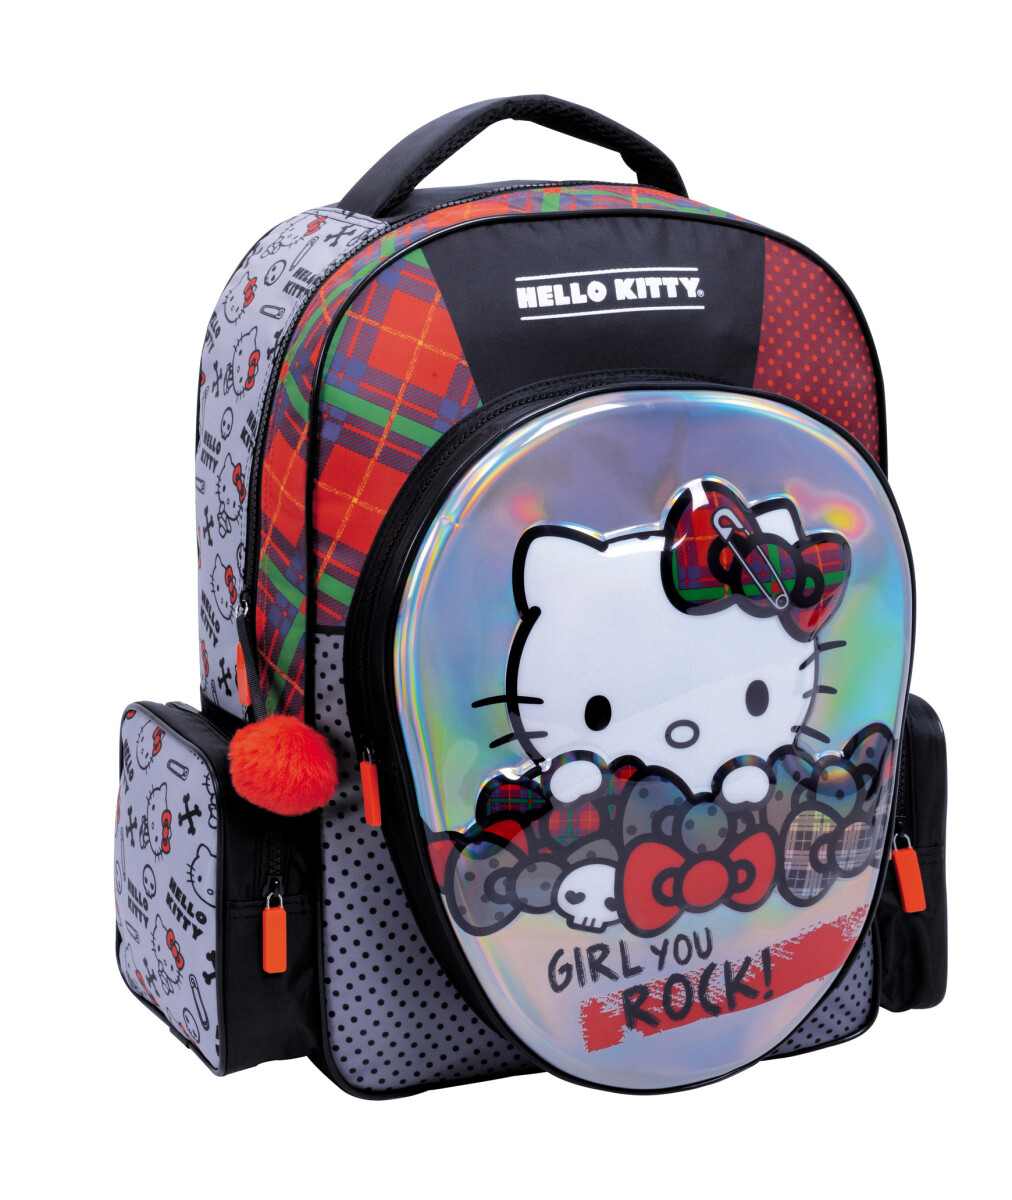 Mochila Hello Kitty Rock Hello Kitty - Negro/Gris/Rojo 